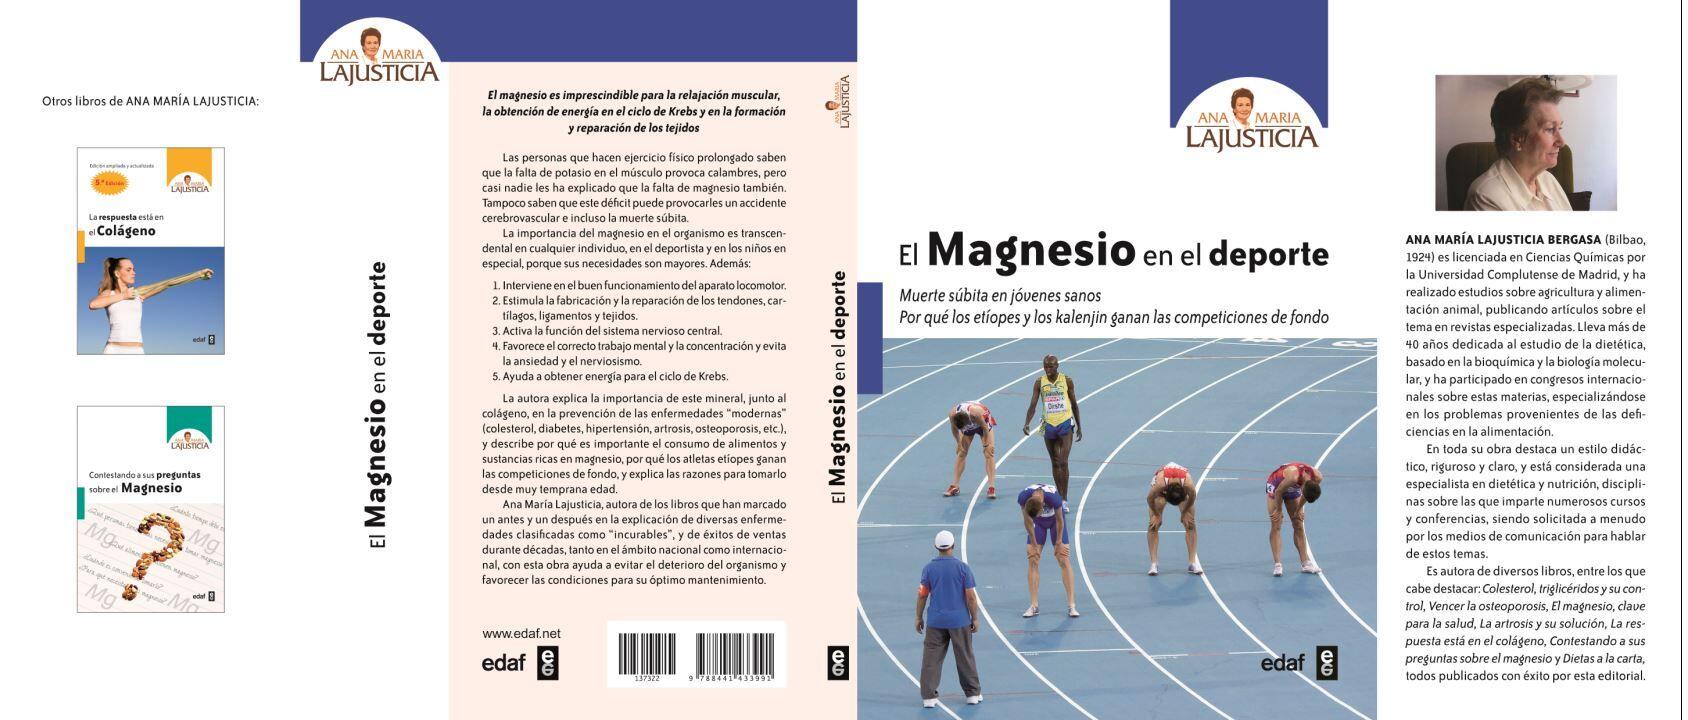 Magnesio nello sport